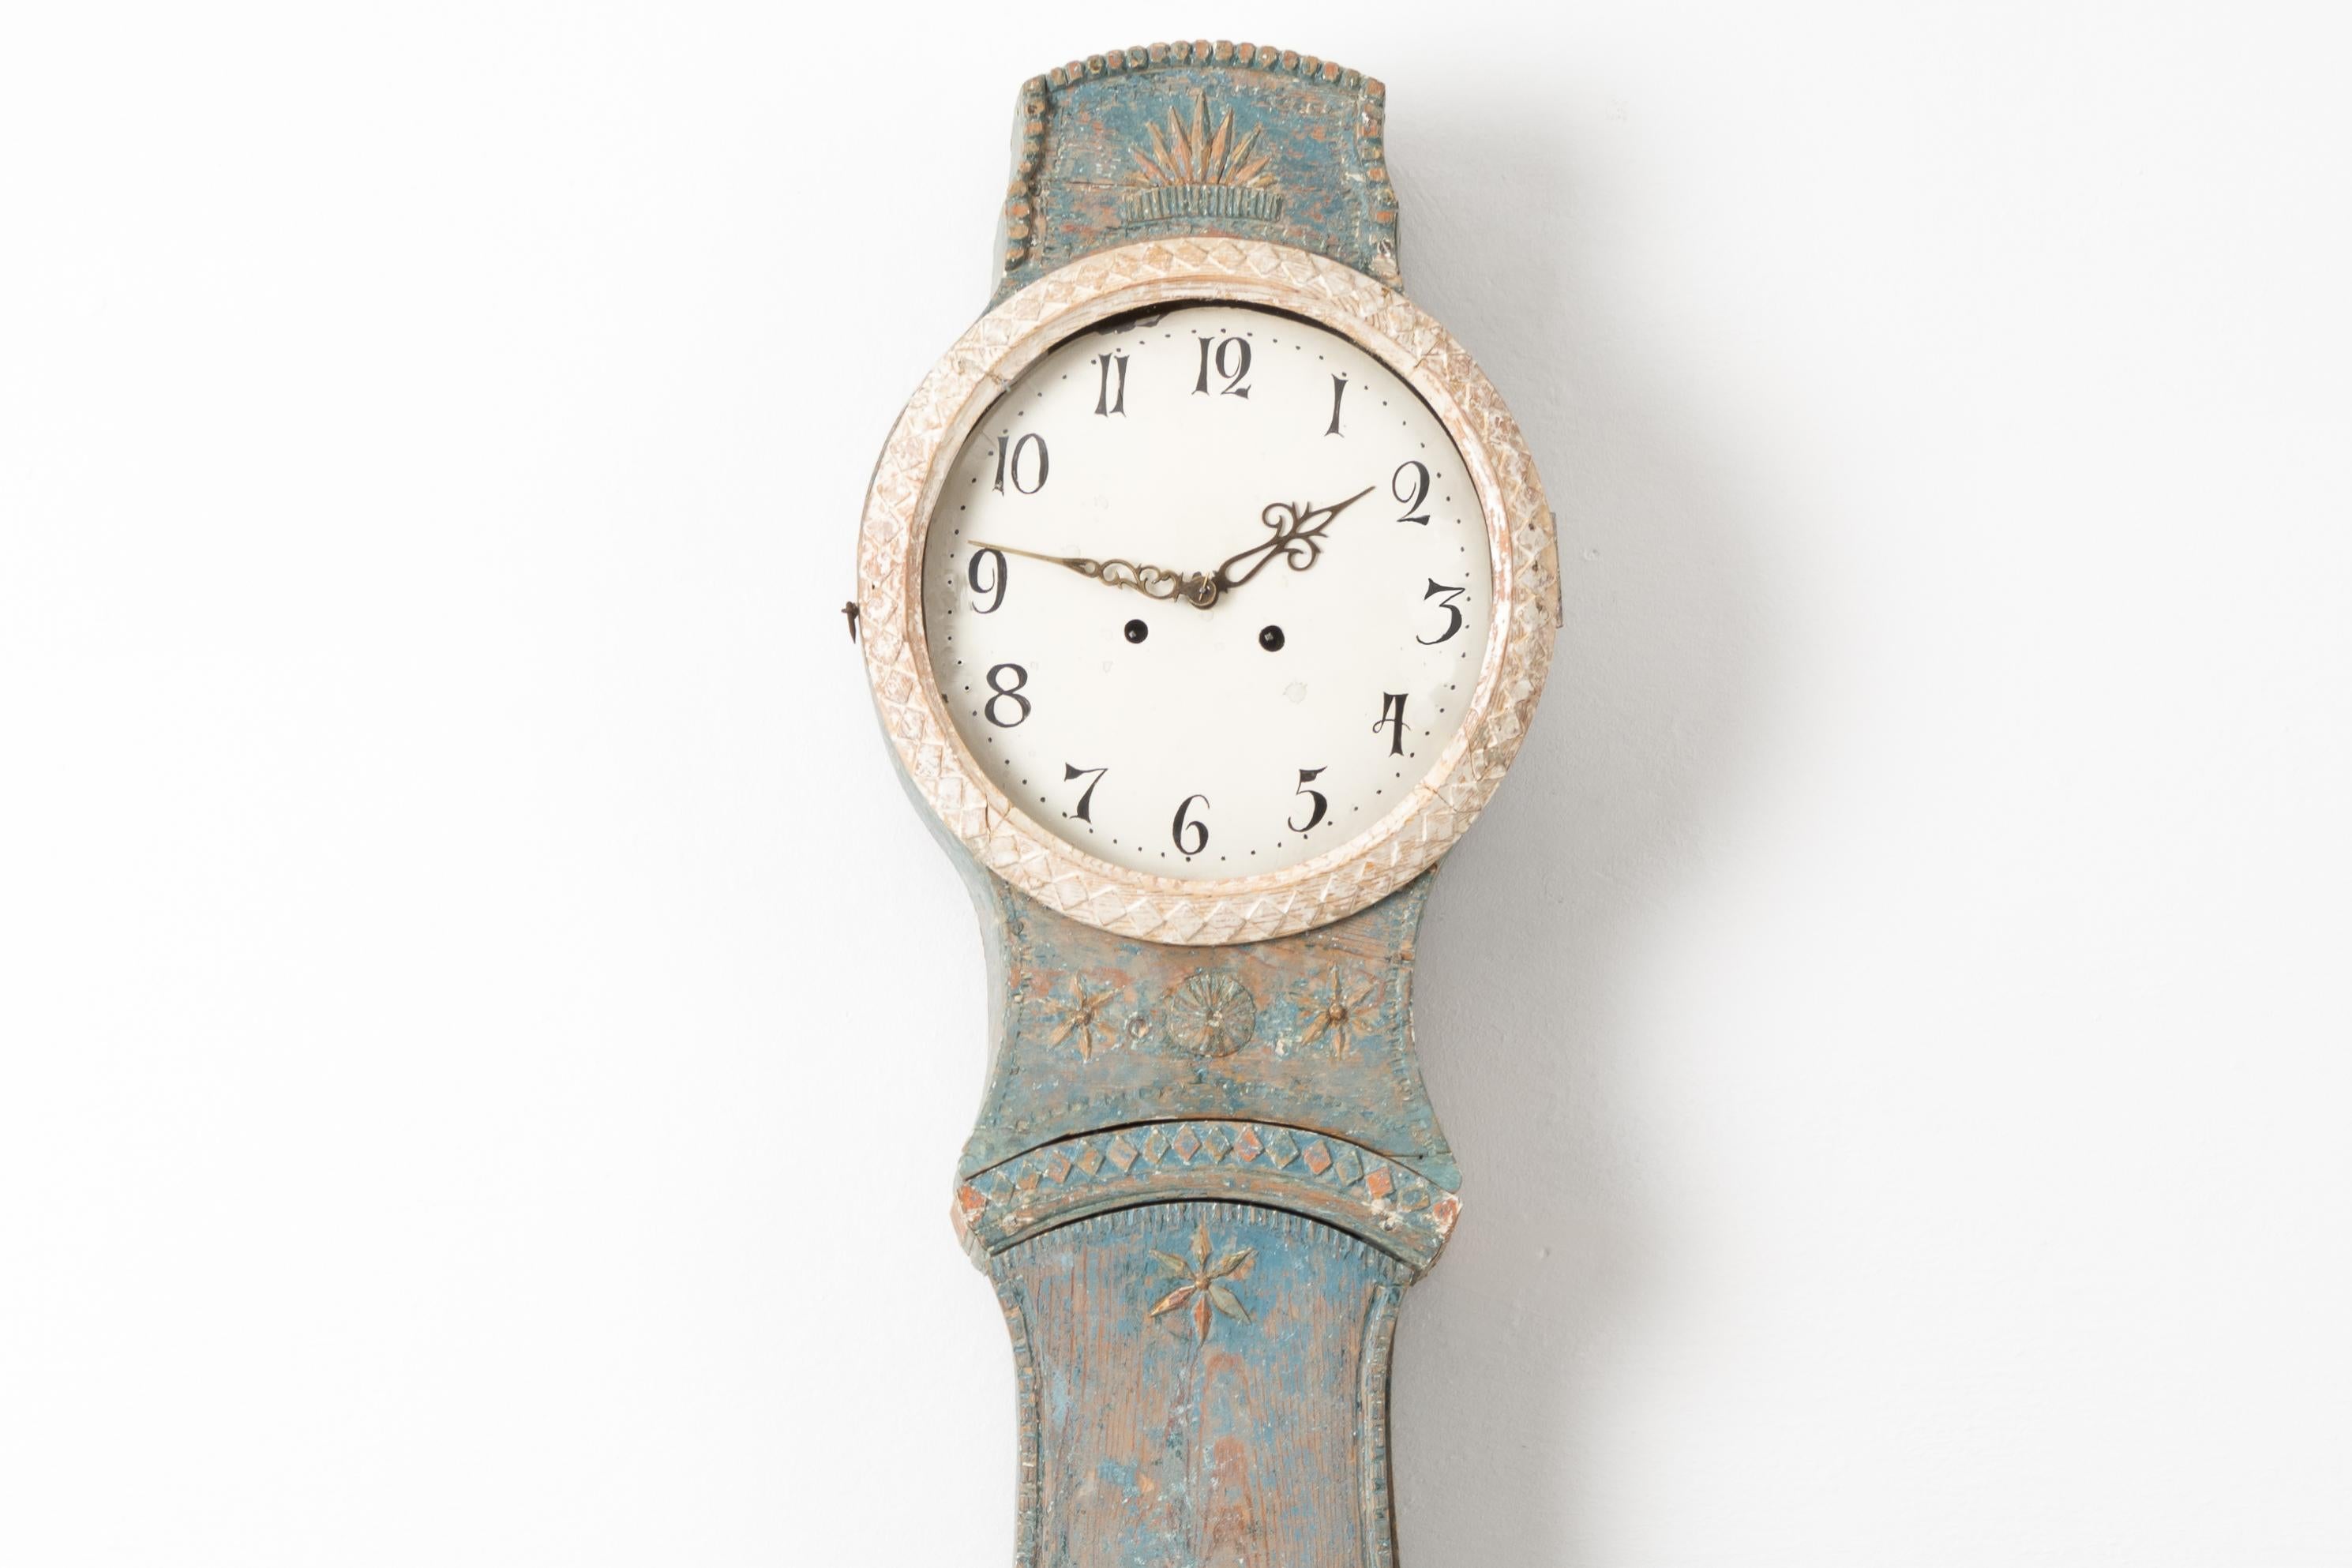 Horloge de campagne en mora de style rococo du nord de la Suède. L'horloge est fabriquée en pin peint et date de la première moitié du XIXe siècle, vers 1820-1830. La peinture bleue est d'origine et date du début des années 1800. Décoré de détails